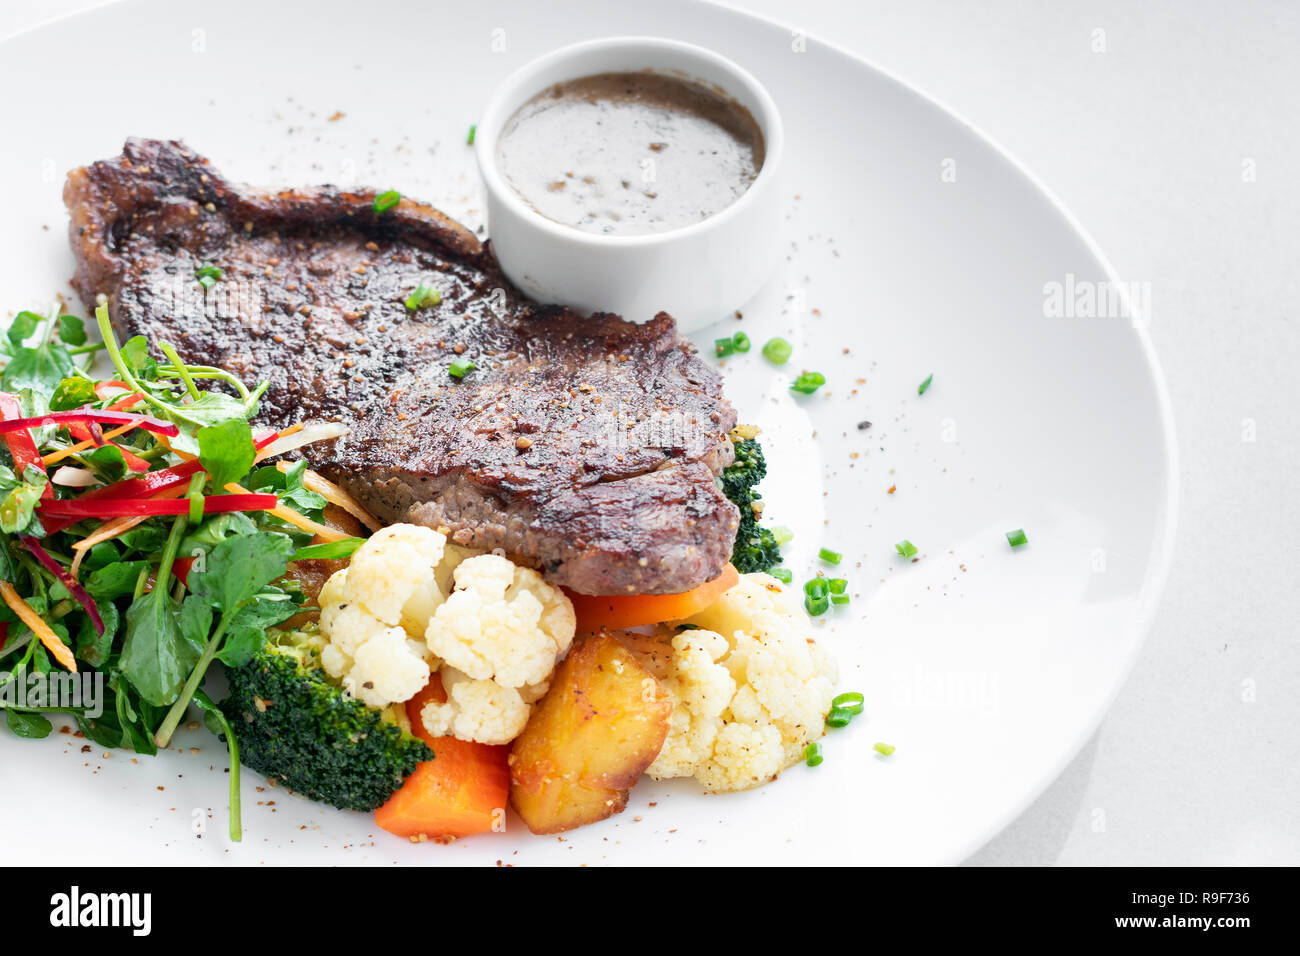 Premium Rindfleisch Steak mit gedünstetem Gemüse und Pilzsauce Gourmet-menü auf weiße Platte Stockfoto